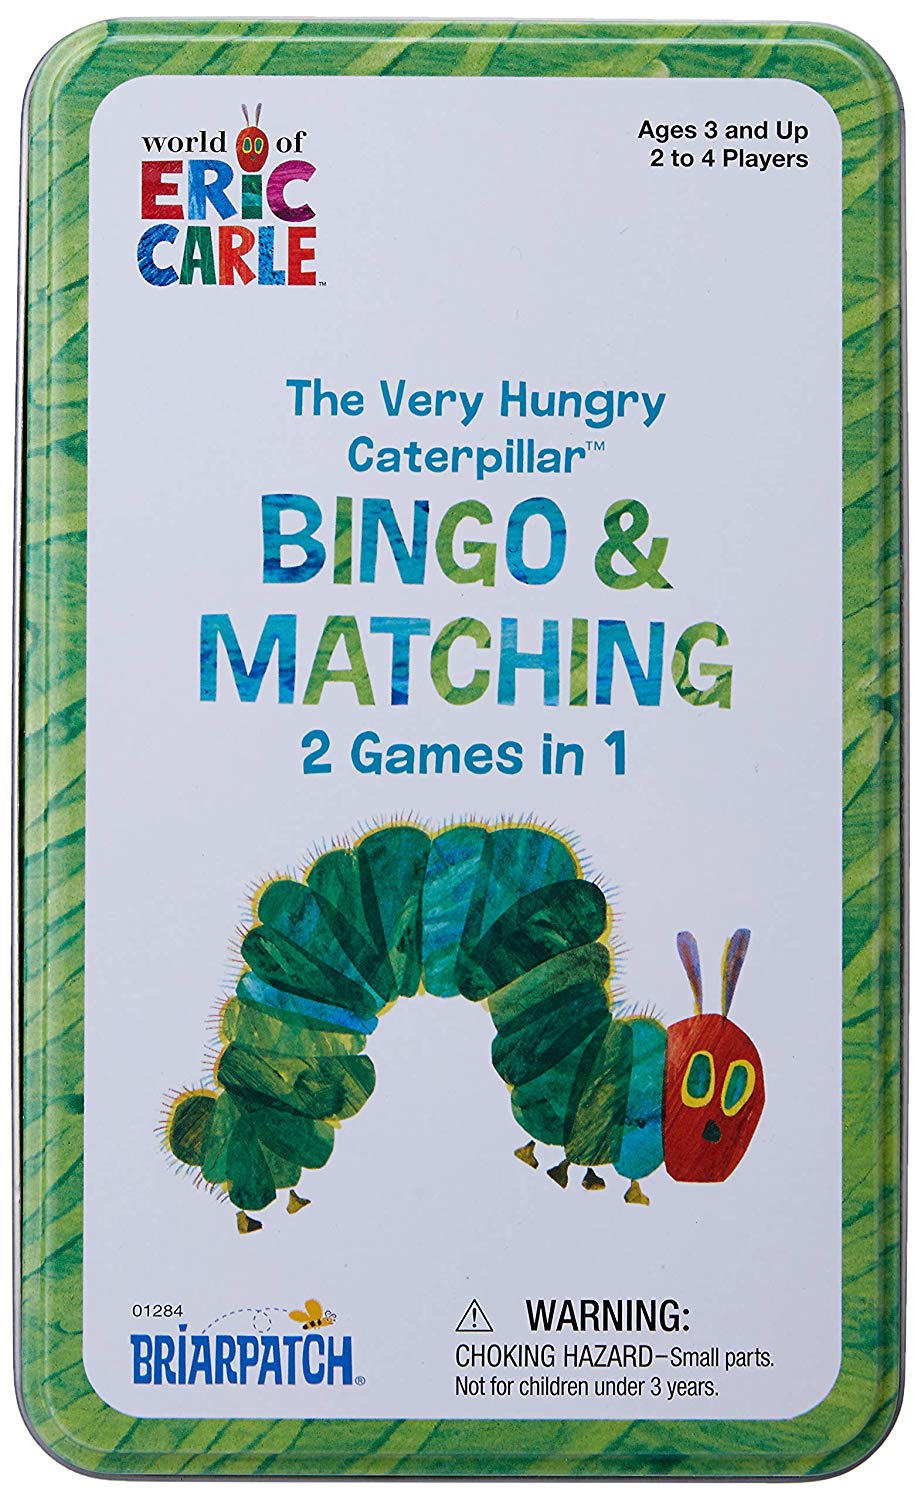 kidz-stuff-online - The Very Hungry Caterpillar Bingo & Matching Game Tin